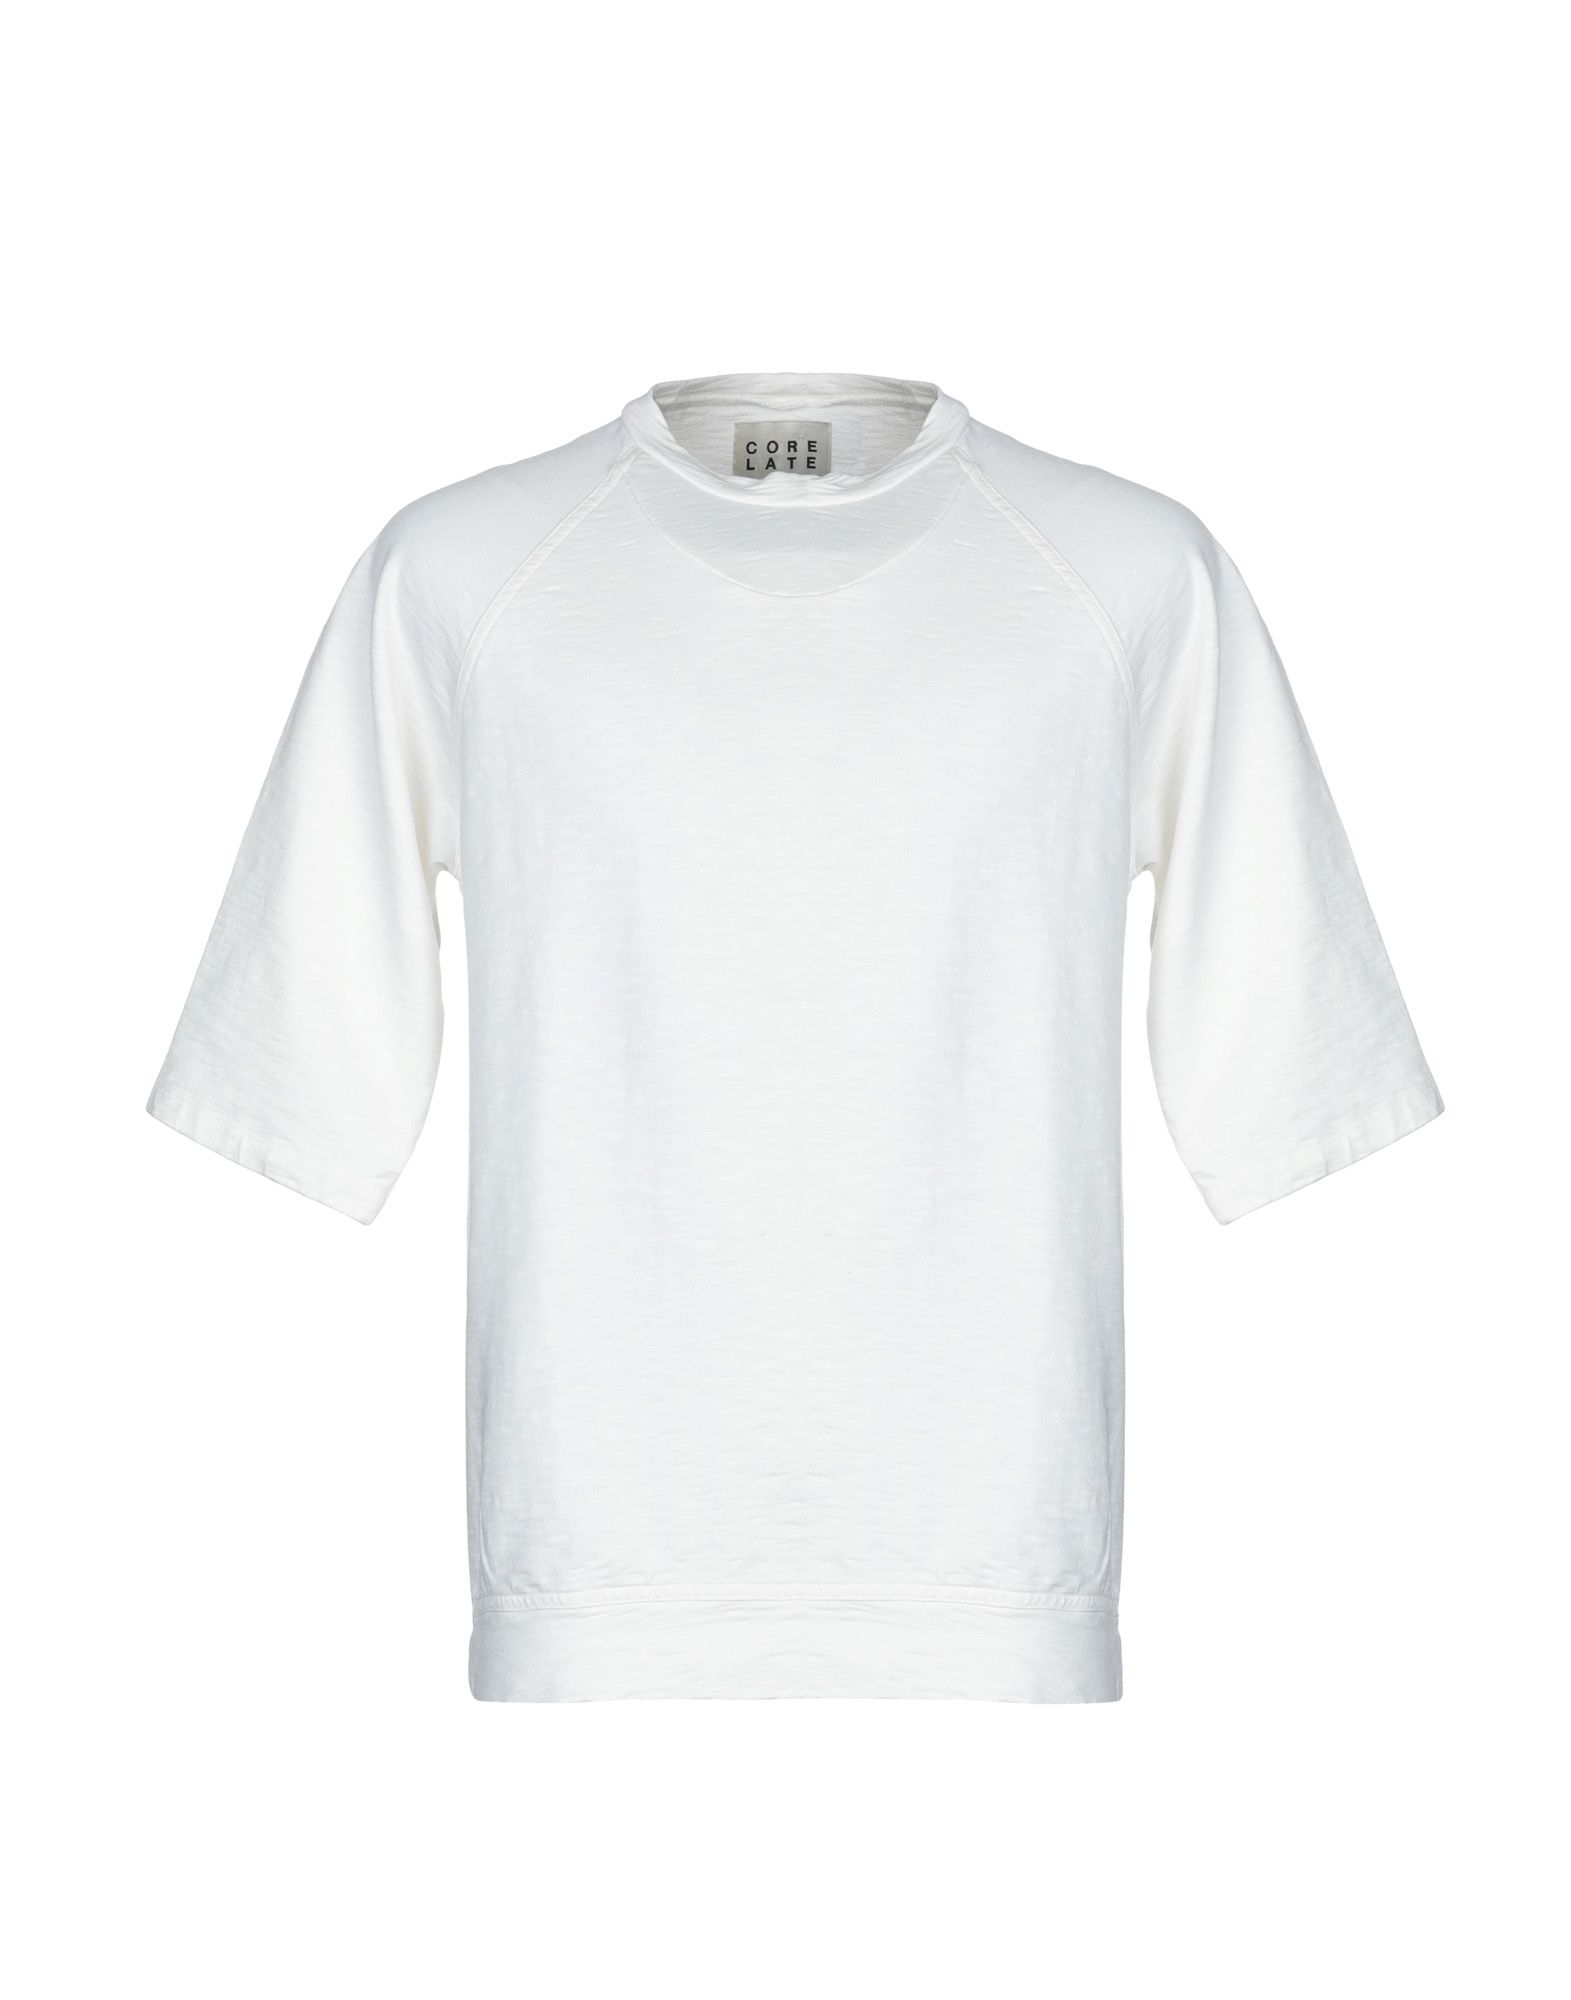 《送料無料》CORELATE メンズ スウェットシャツ ホワイト M コットン 100%